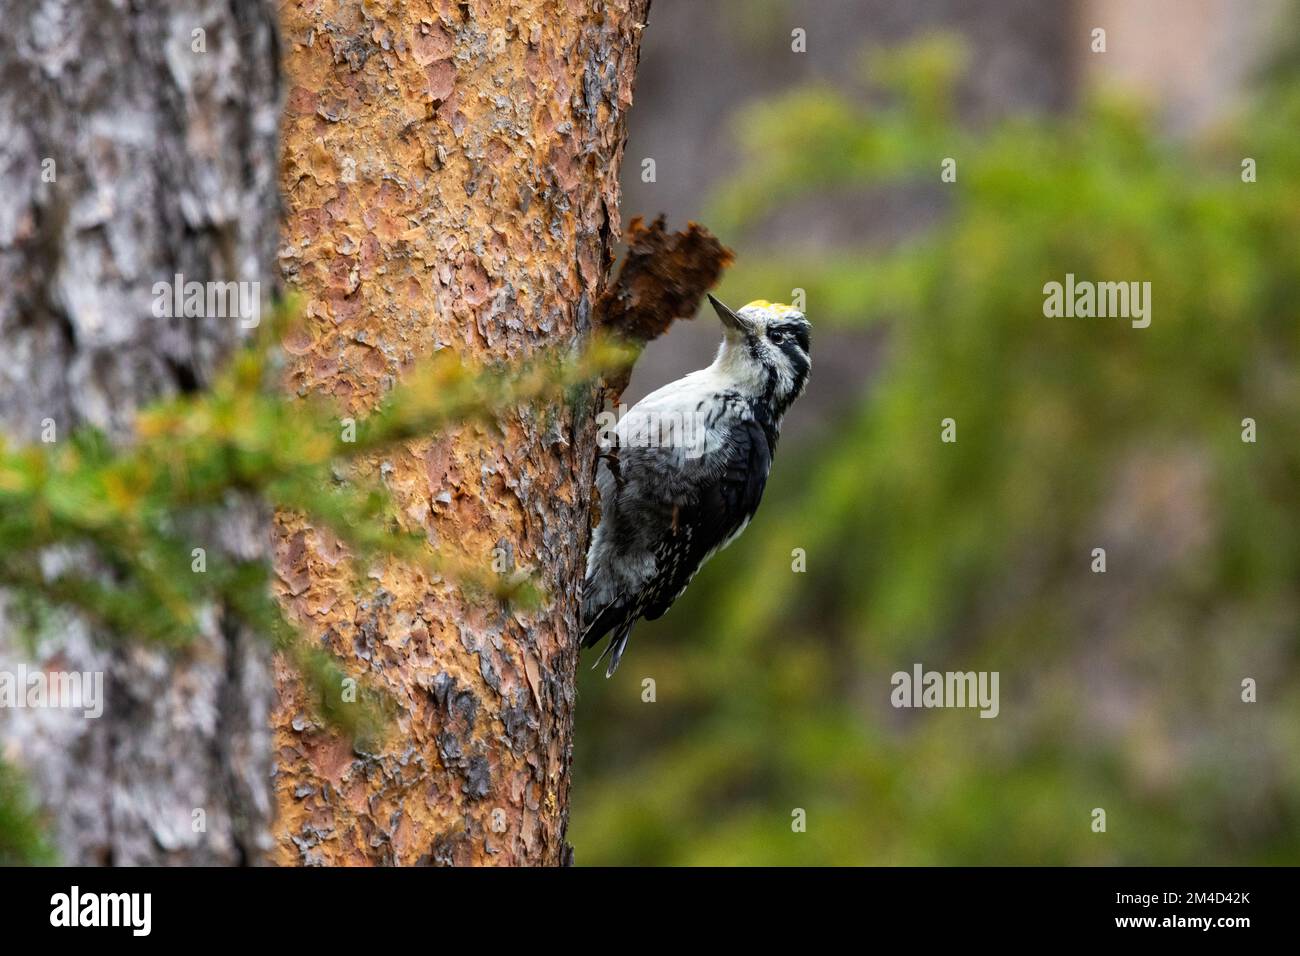 Ein wunderschöner männlicher dreizehiger Specht, der auf einen Kiefernstumpf klettert und in einem finnischen Wald in der Nähe von Kuusamo nach Essen sucht Stockfoto